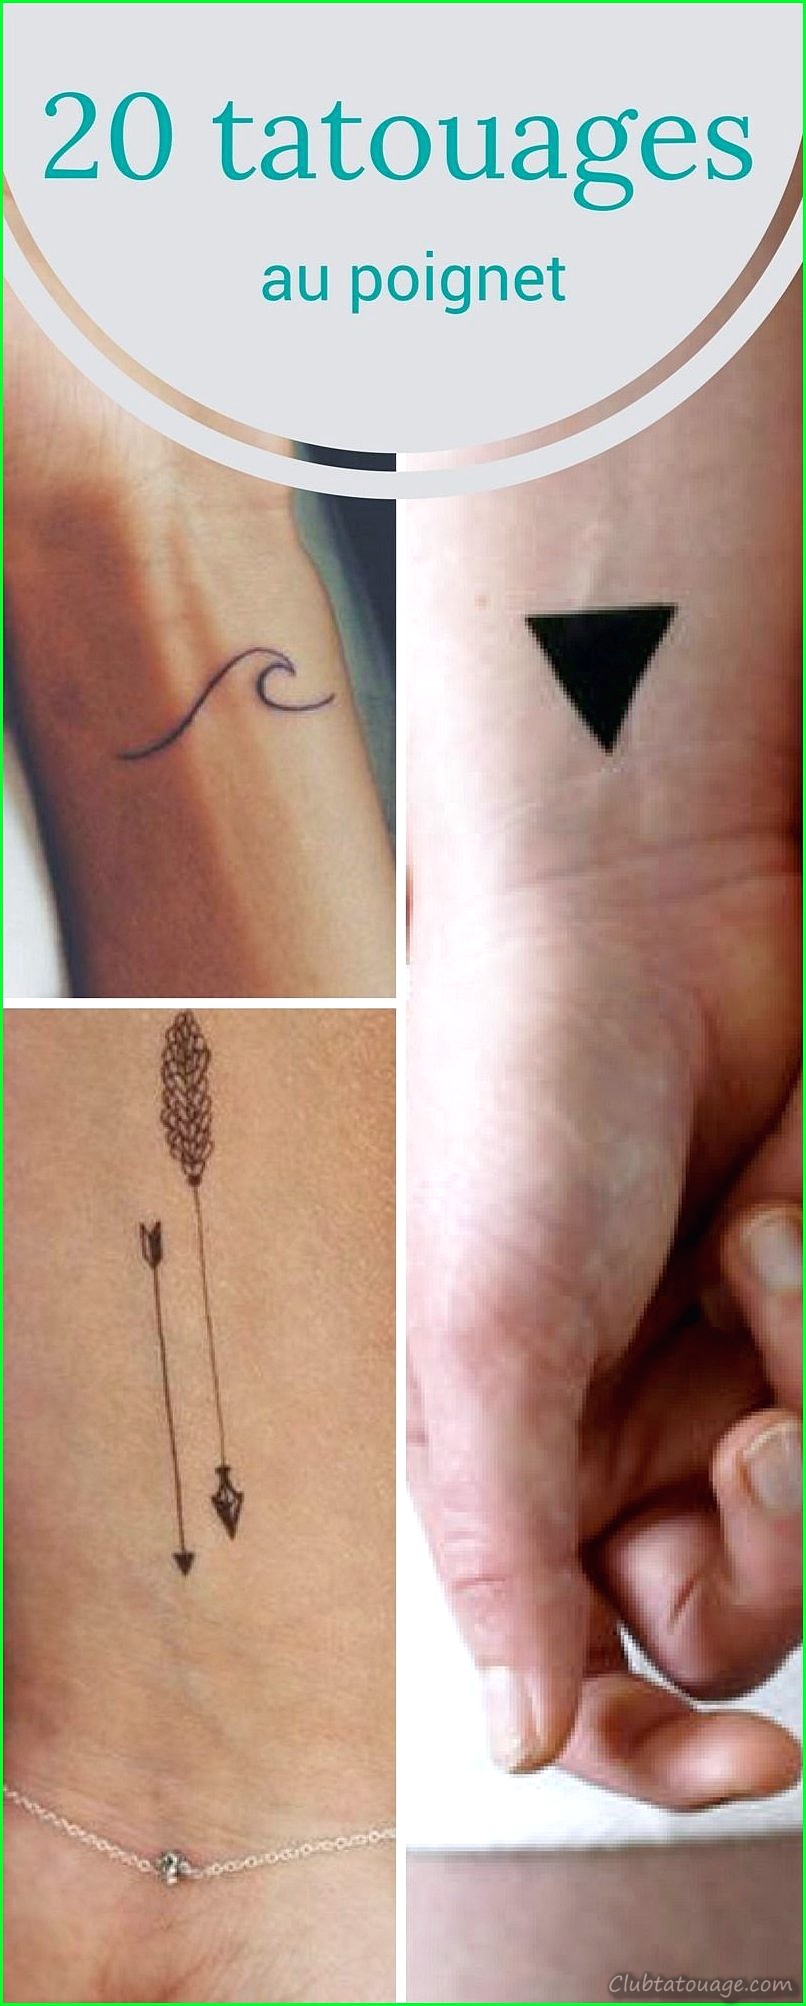 Les petits tatouages les plus originaux